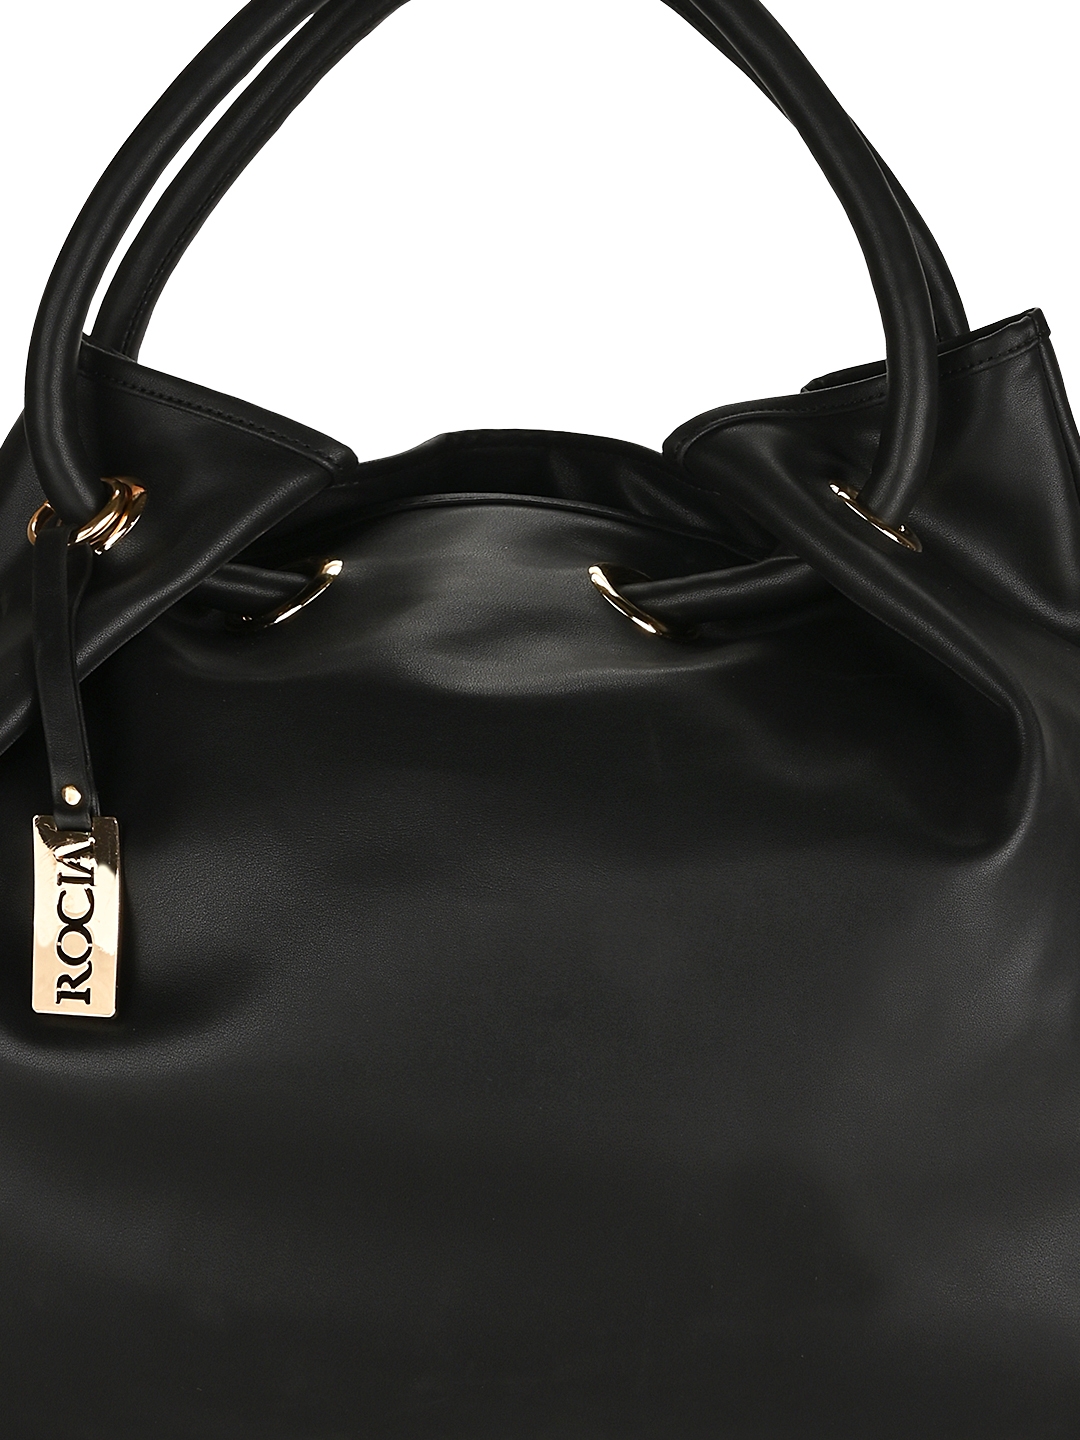 Rocia | Rocia Black Solid Big Shoulder Bag 4